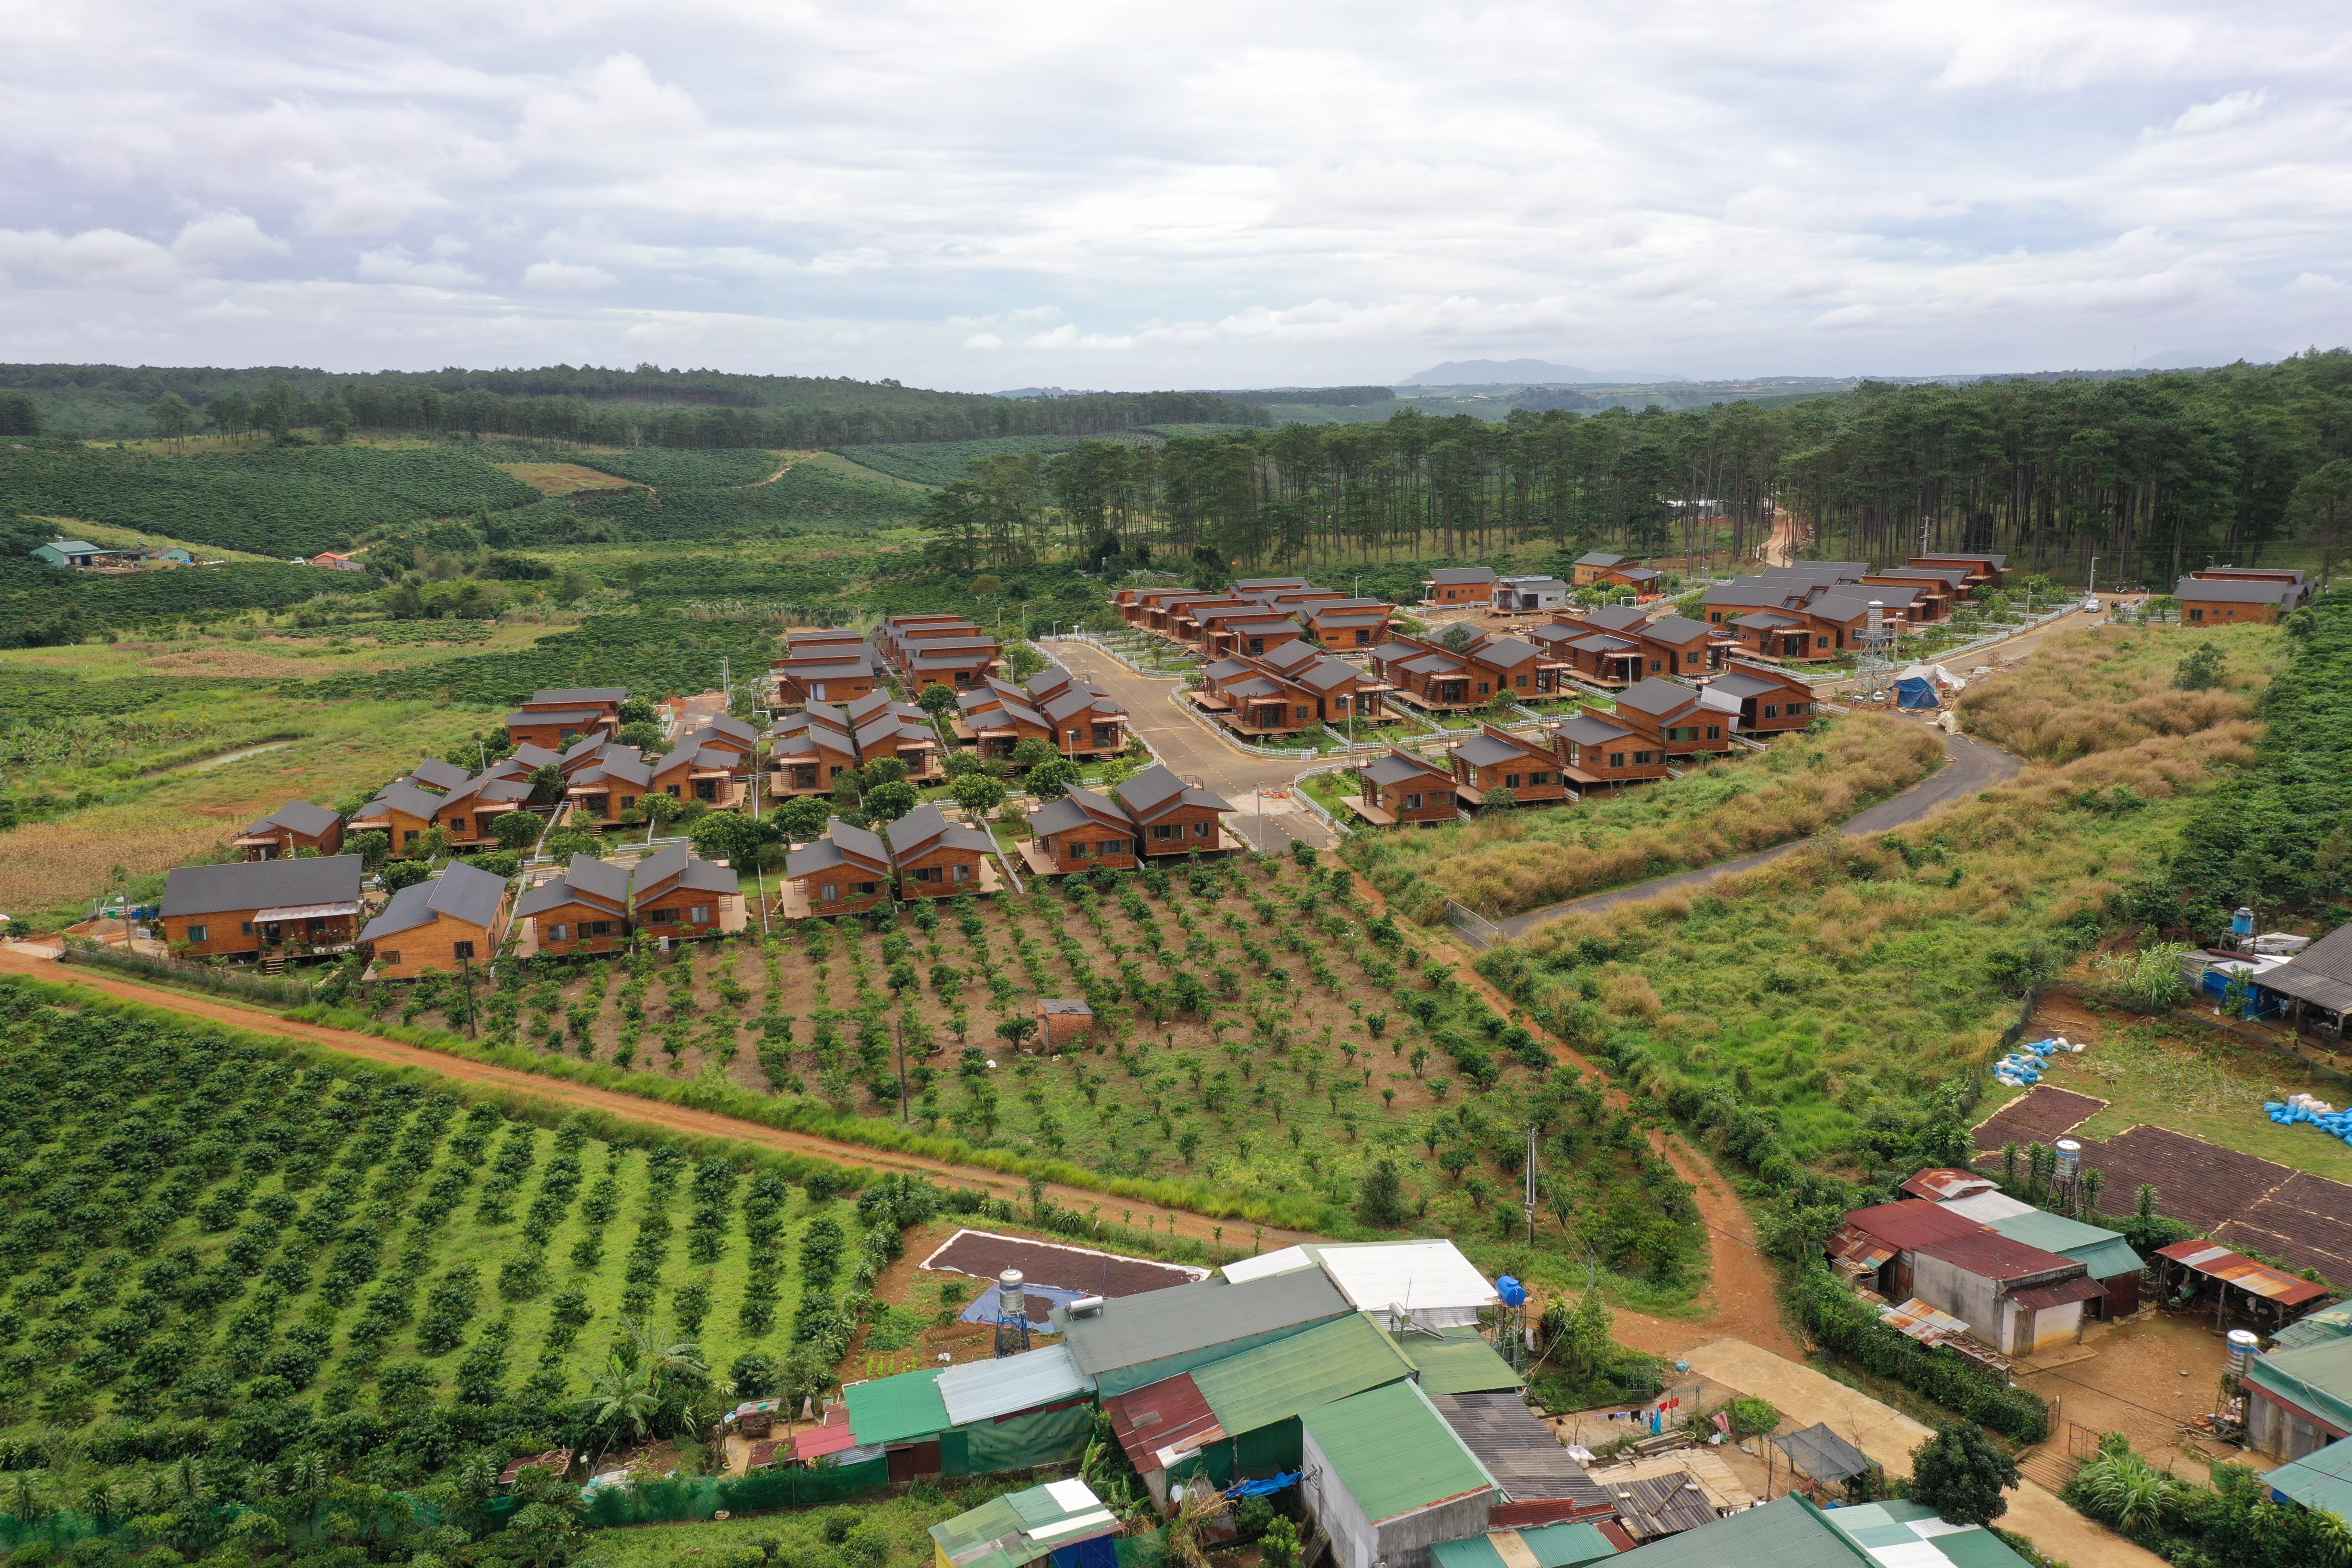 Lâm Đồng: TP Bảo Lộc và huyện Bảo Lâm báo cáo gấp tình hình phân lô tách thửa 4 năm nay